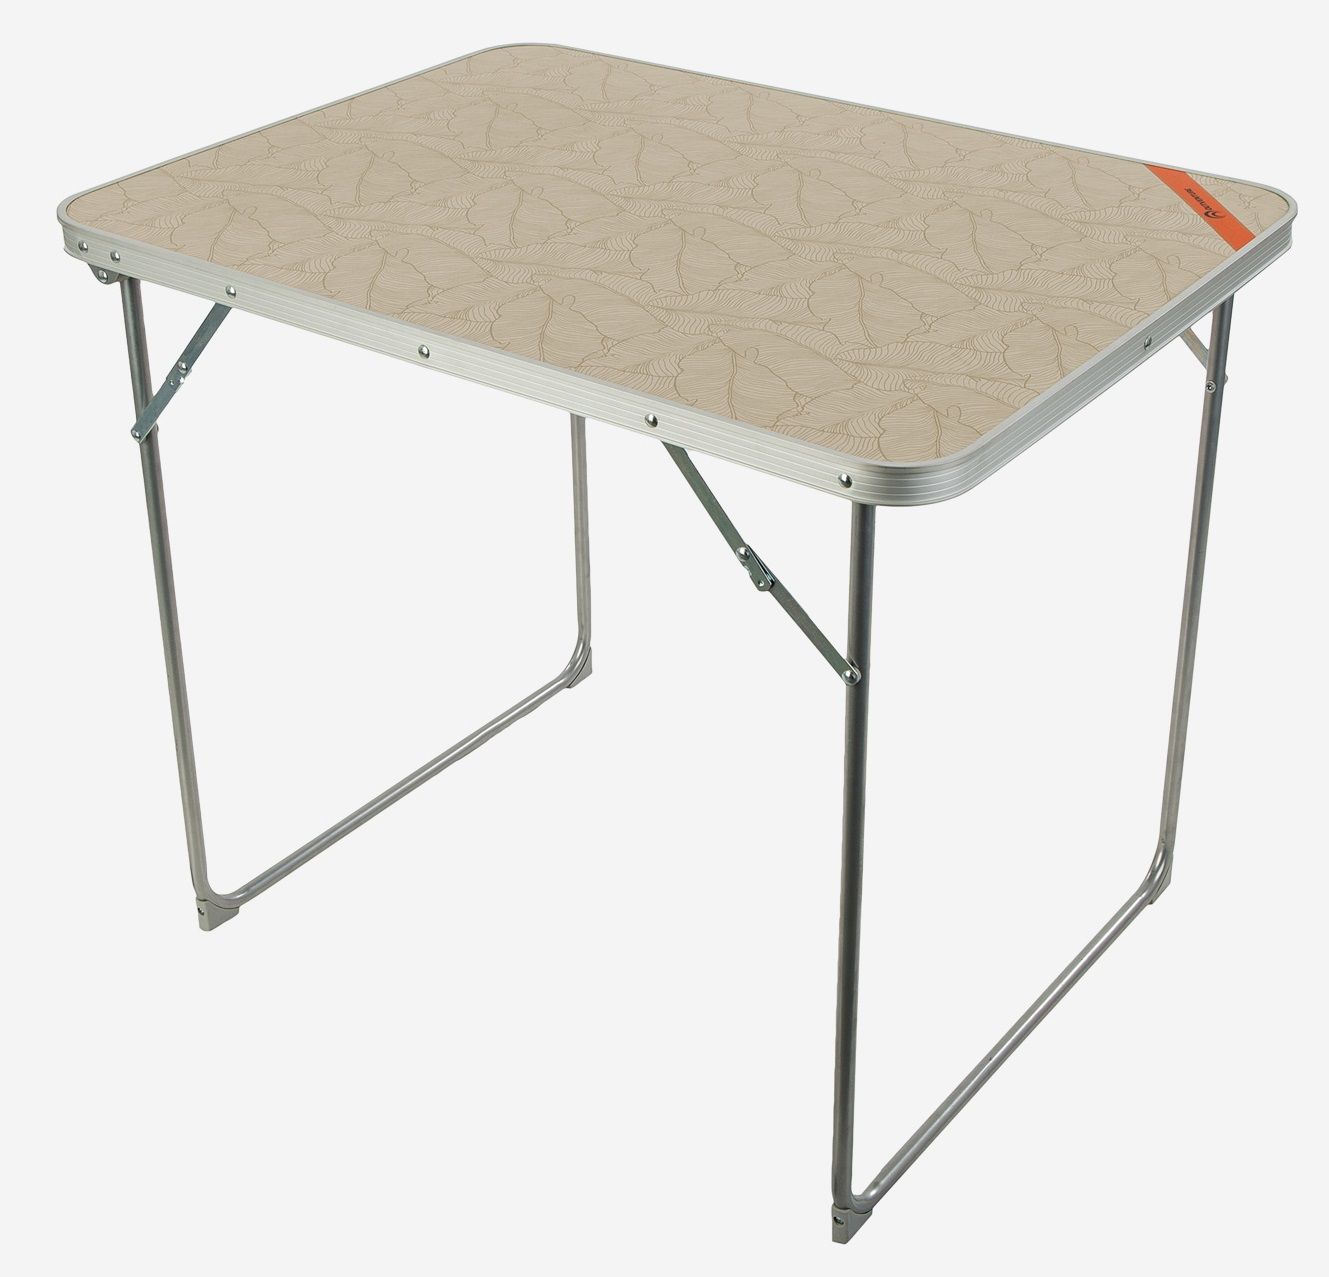 легкий складной стол для кемпинга